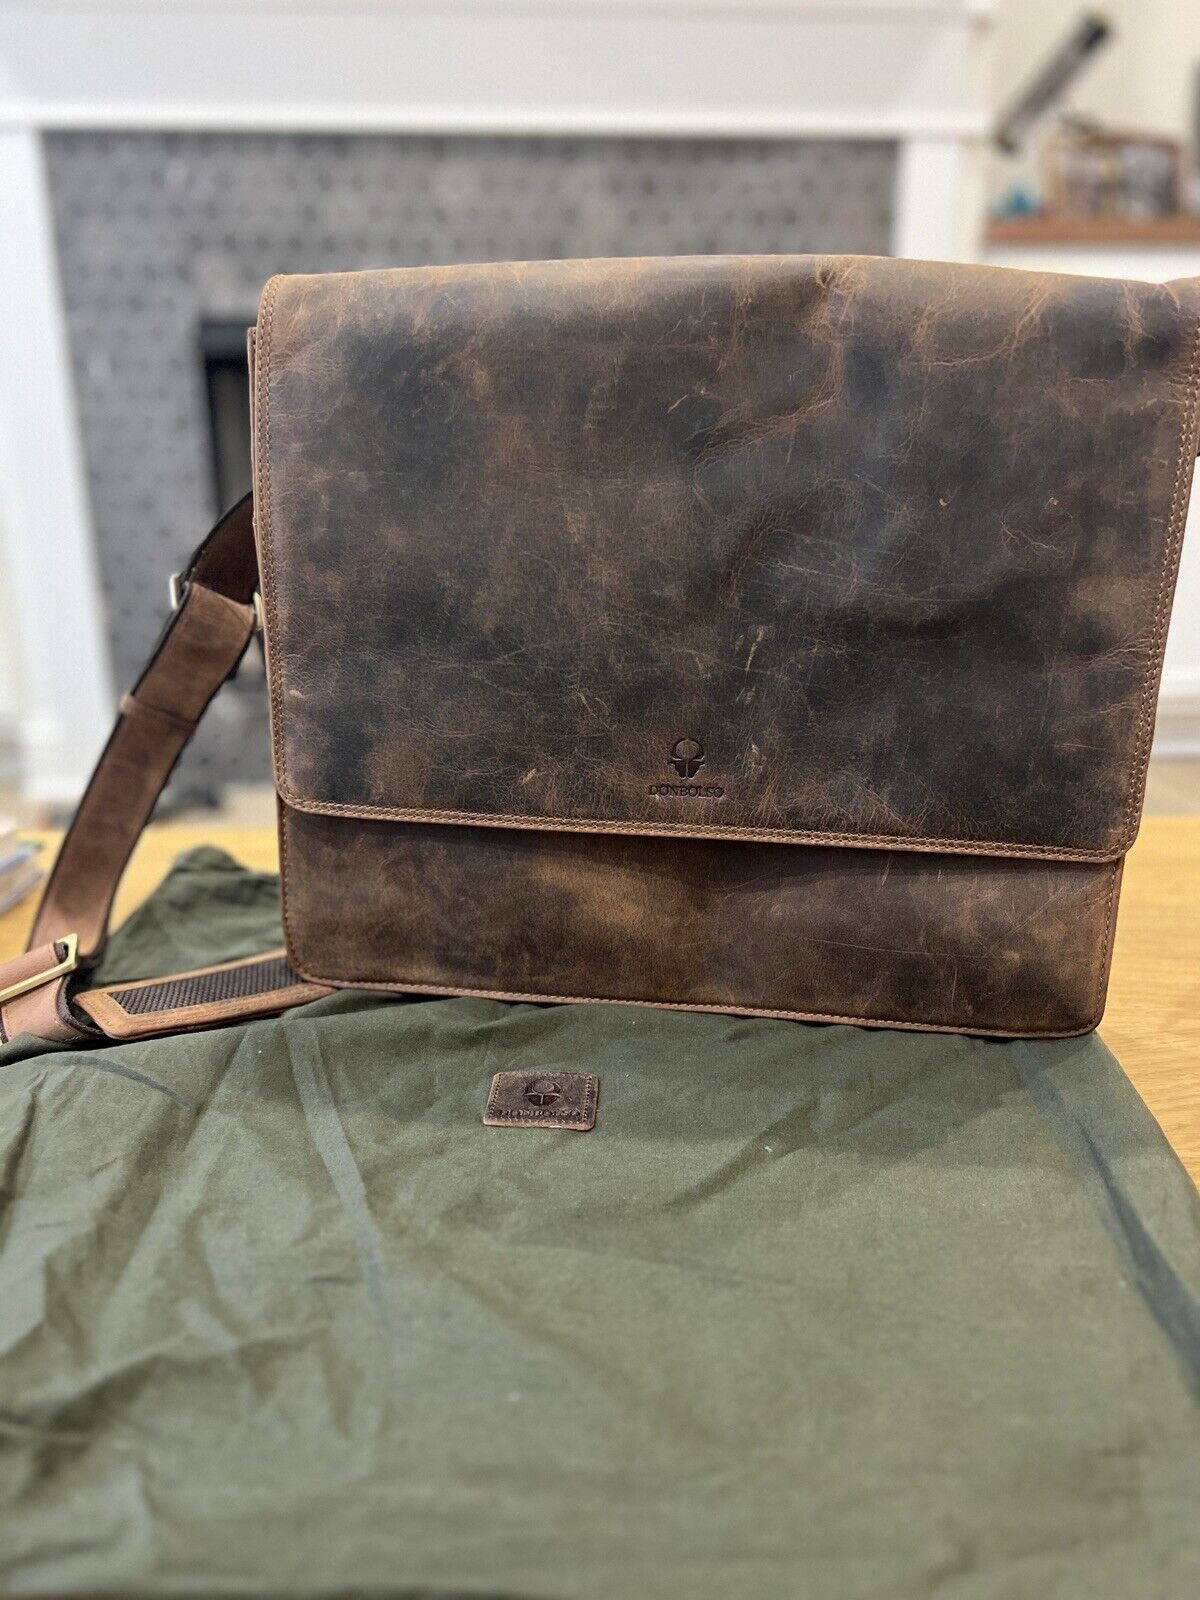 Donbolso Messenger Bag Laptop Vintage Brown Genuine Leather Flap Shoulder Strap